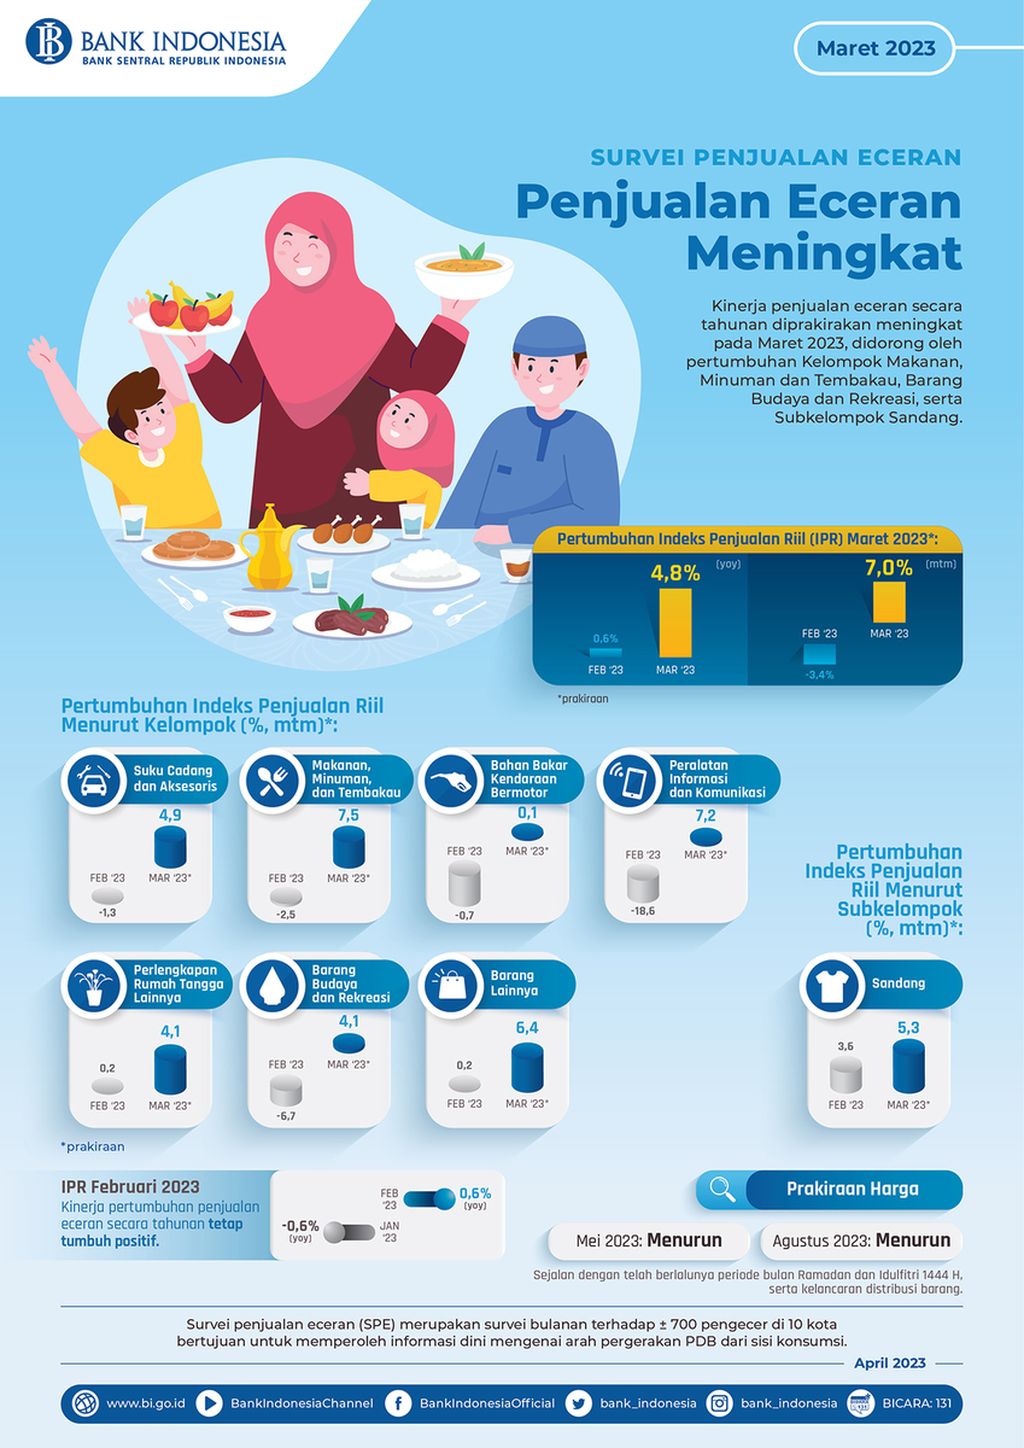 Infografis survei penjualan eceran Maret 2023 (sumber: Bank Indonesia).